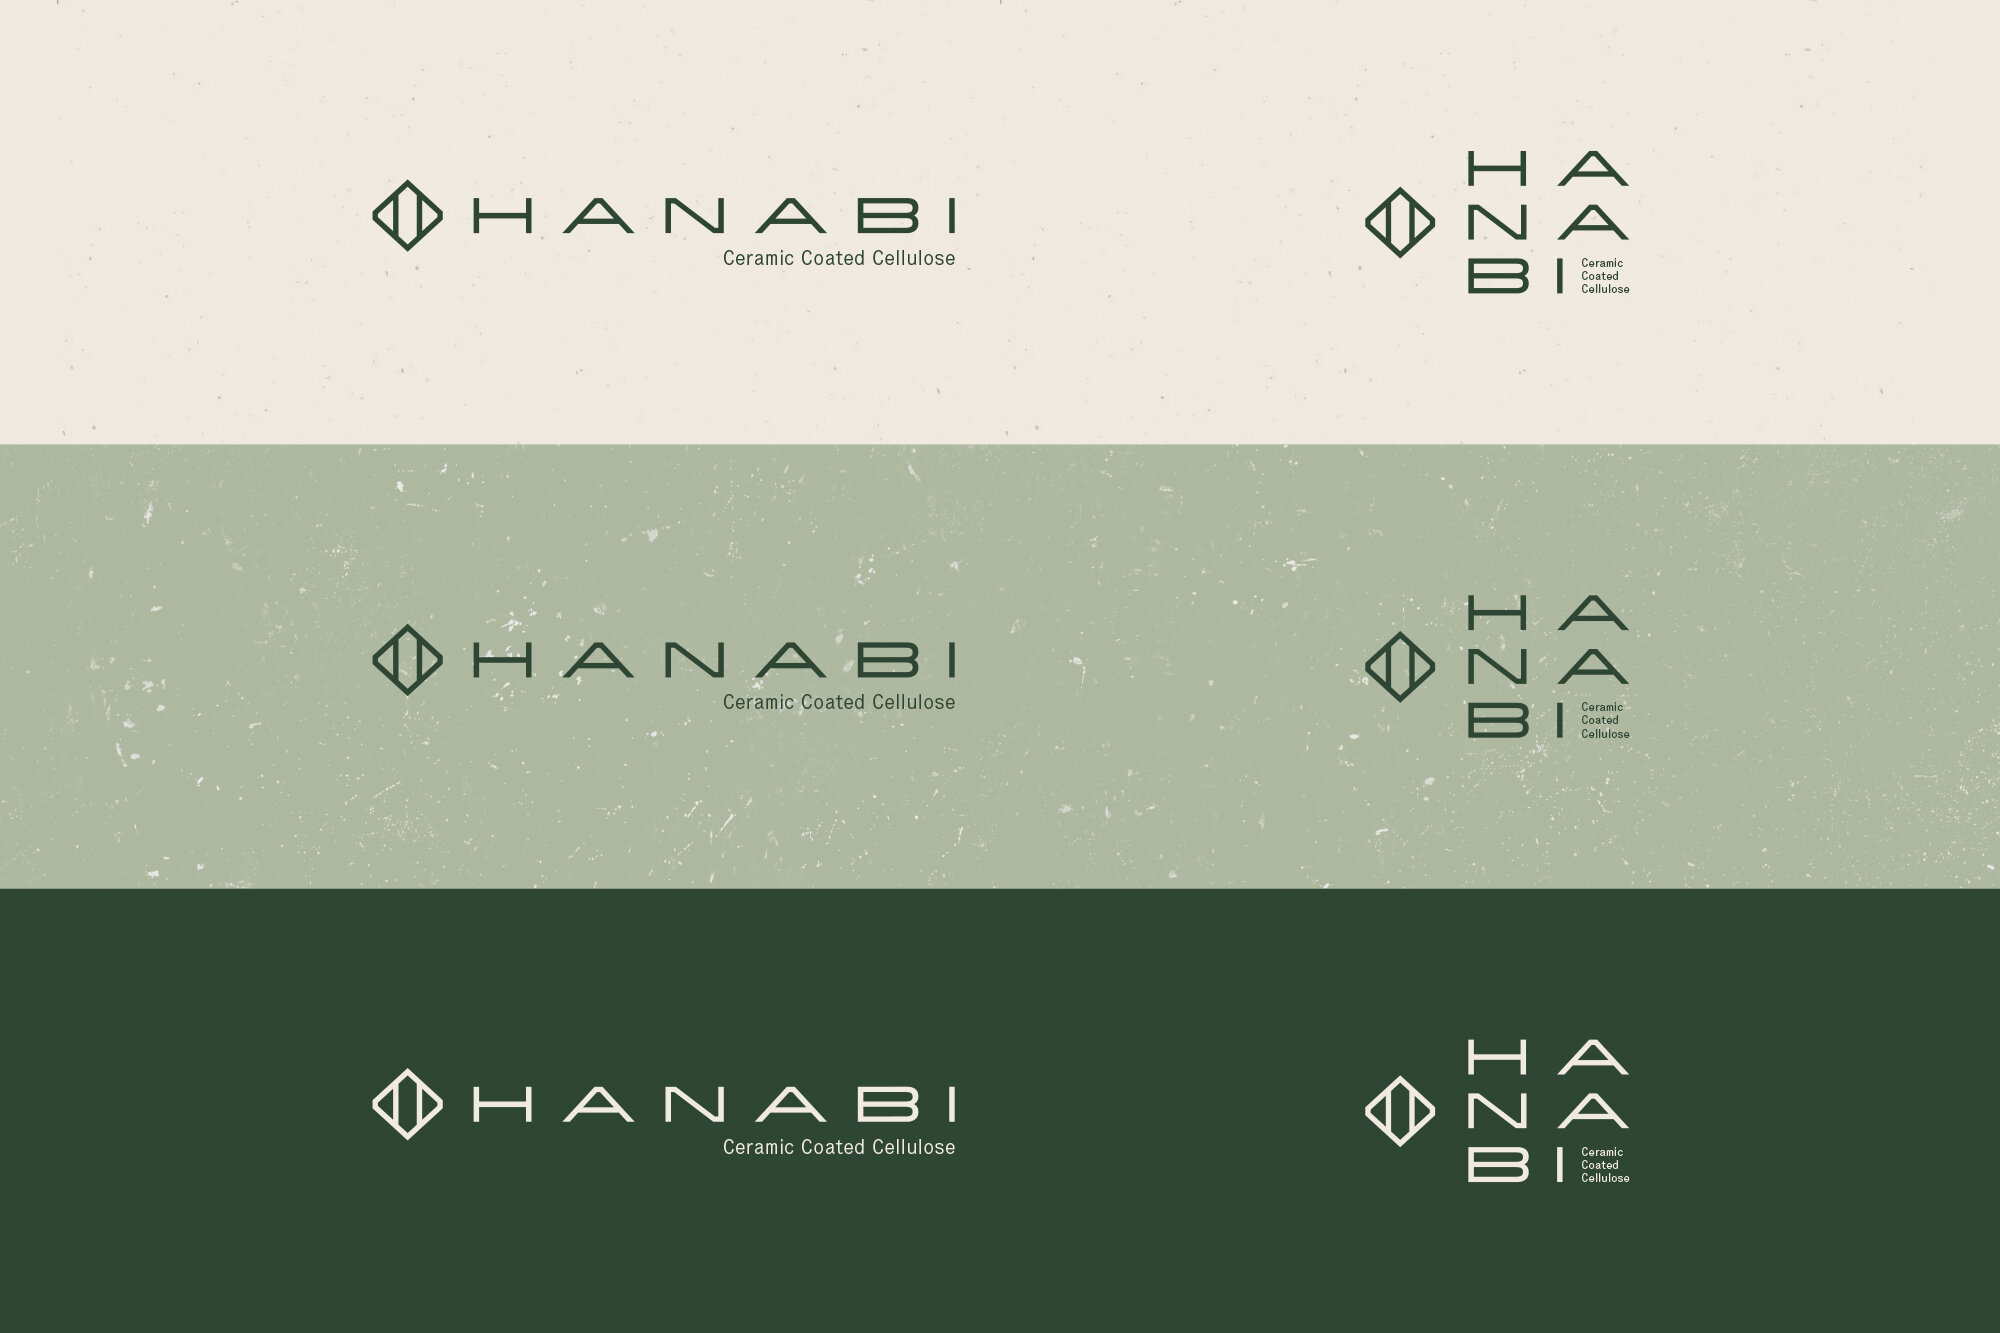 HANABI-4.jpg